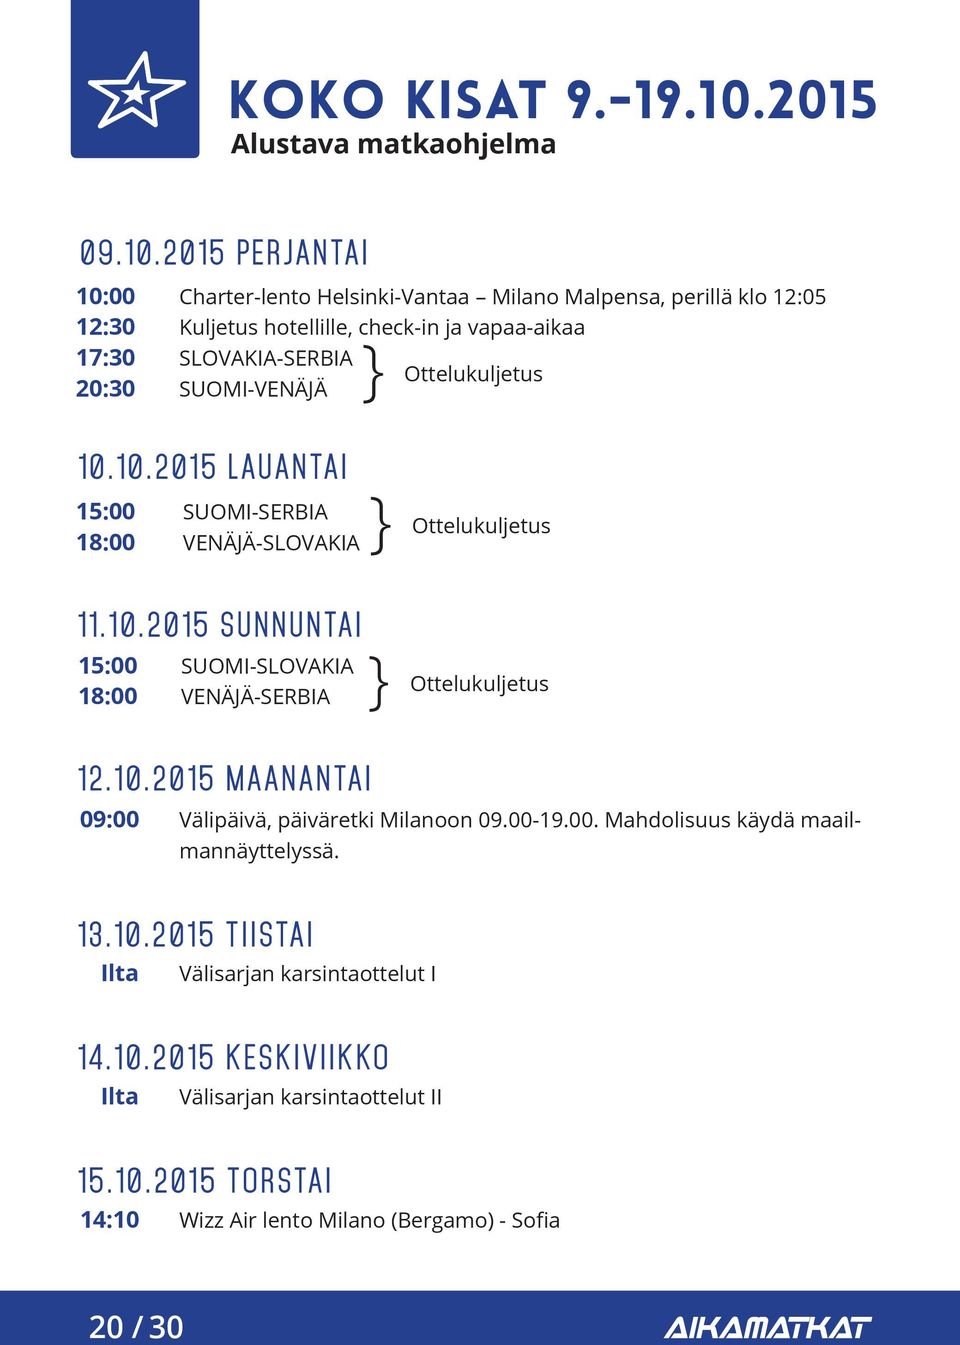 2015 PERJANTAI 10:00 12:30 17:30 20:30 Charter-lento Helsinki-Vantaa Milano Malpensa, perillä klo 12:05 Kuljetus hotellille, check-in ja vapaa-aikaa